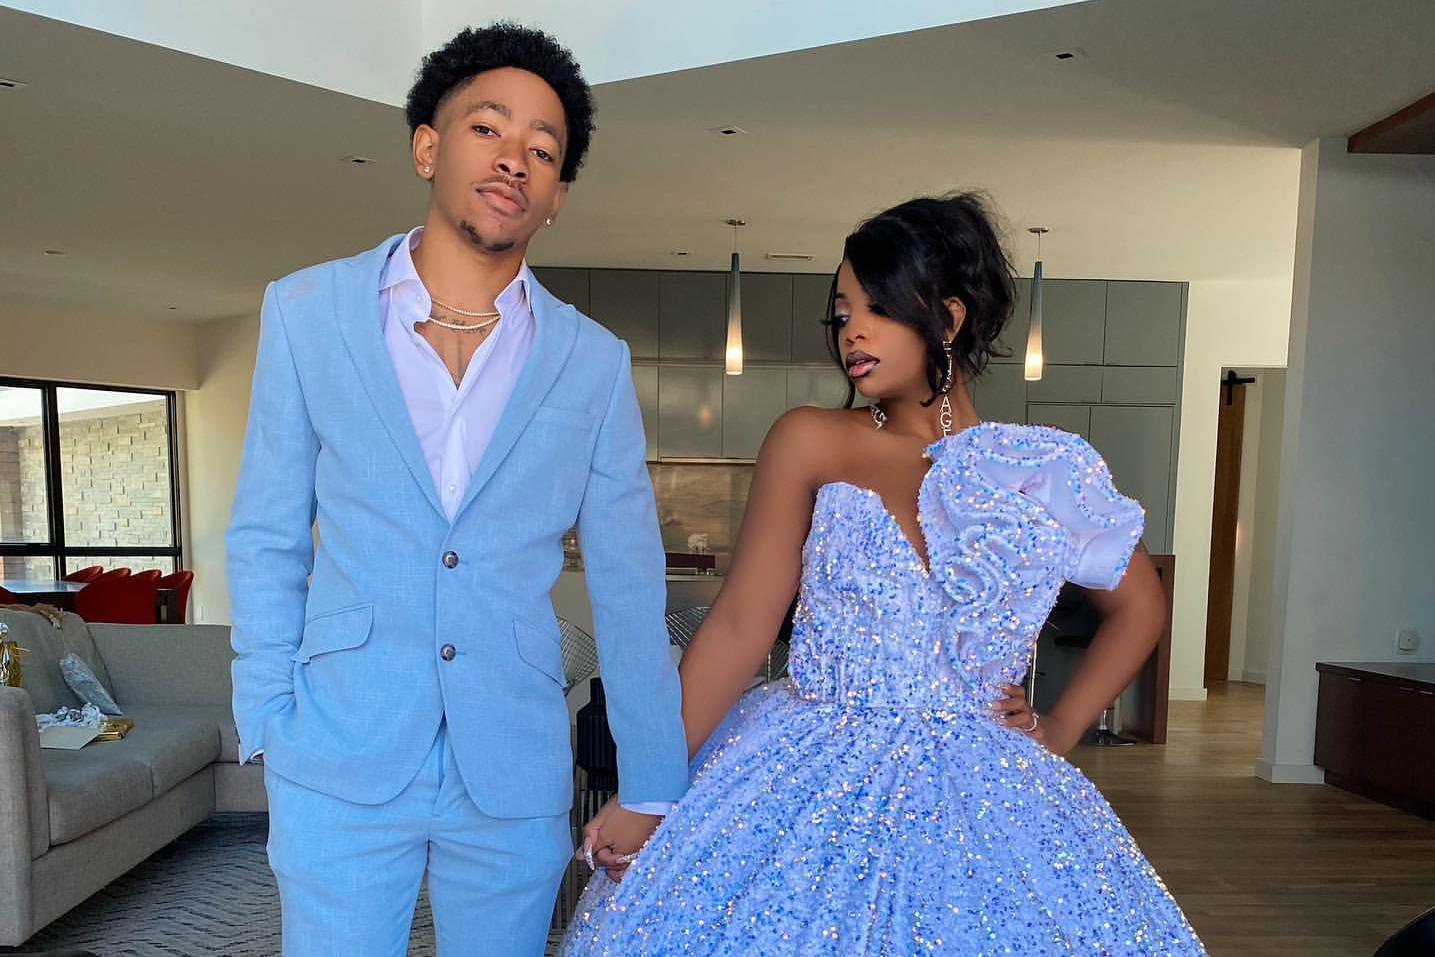 Ken and De'arra appear in fancy dress on Instagram